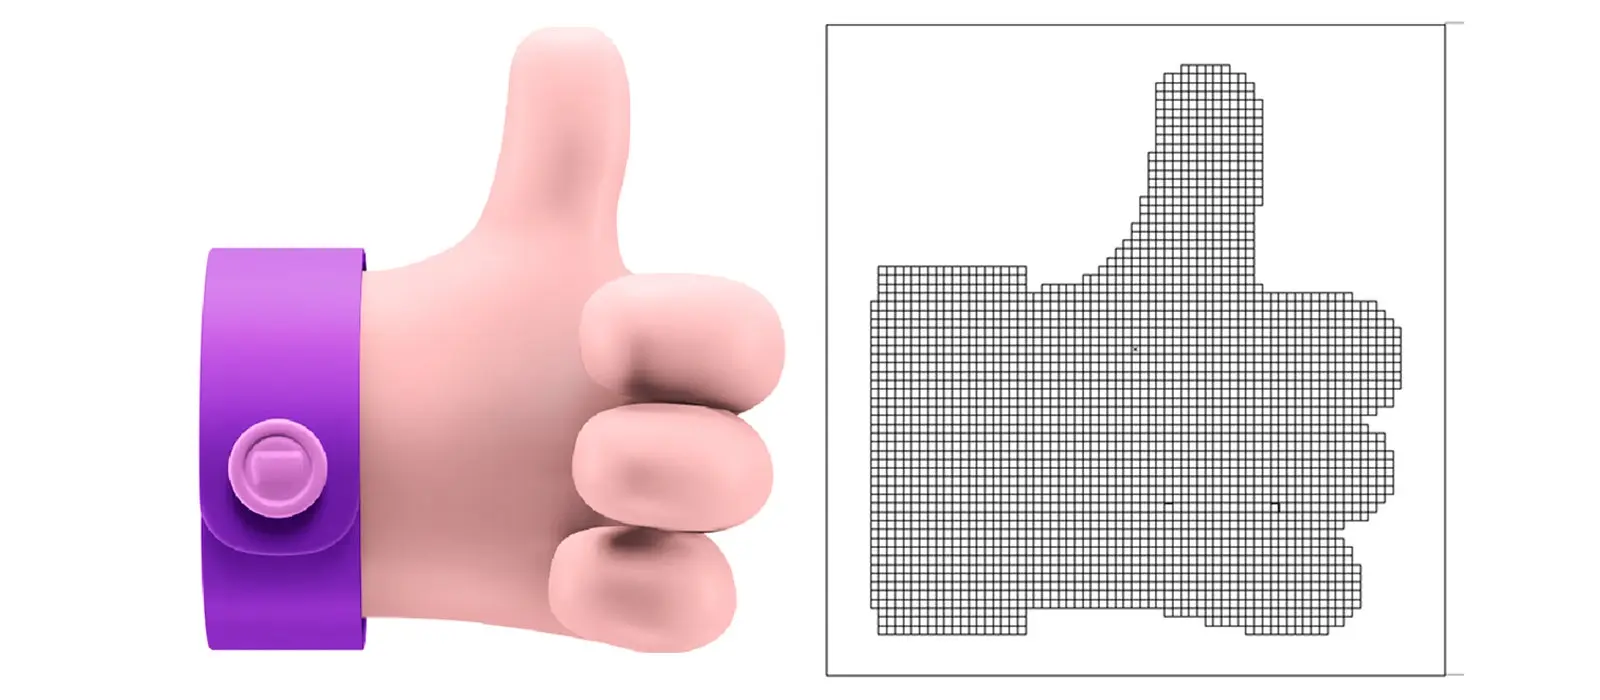 ilustracion de una mano humana en efecto pixel art